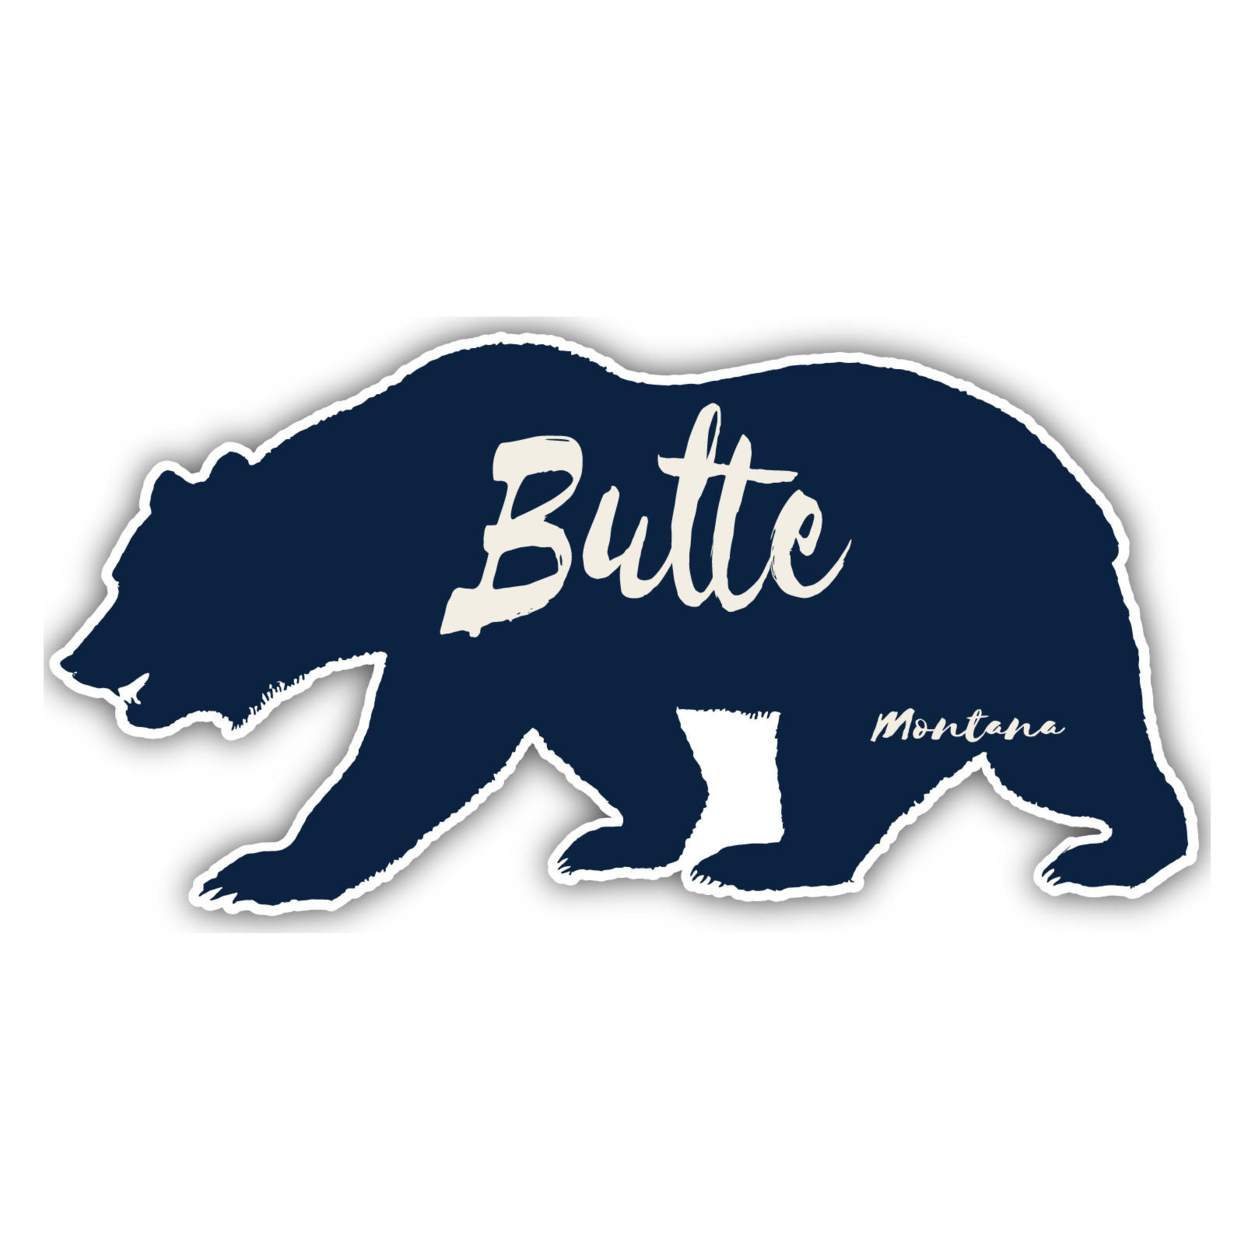 Butte Montana Souvenir Decorative Stickers (Choose Theme And Size) - Single Unit, 2-Inch, Tent